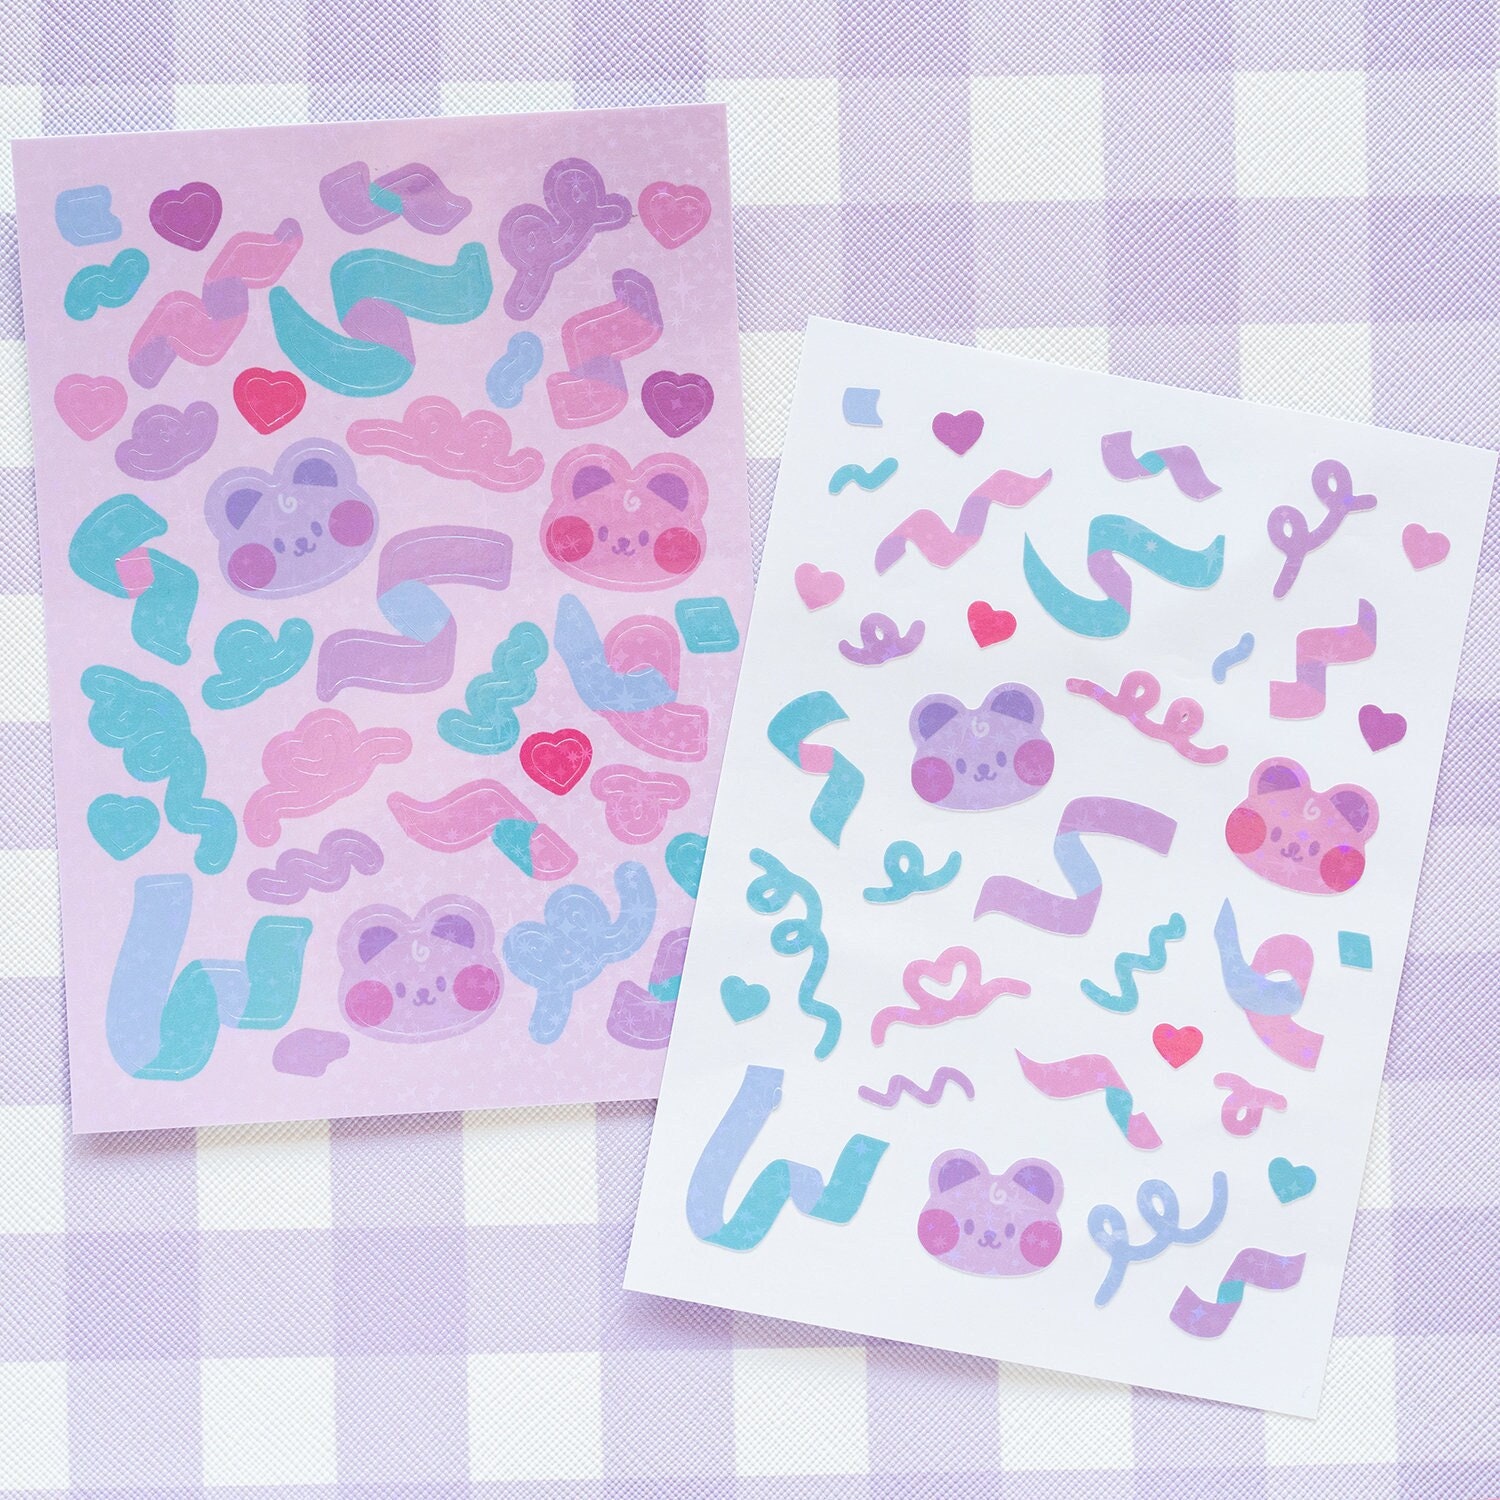 Kpop Toploader Sticker Sheet, Butterfly Cherry Stickers, Photocard